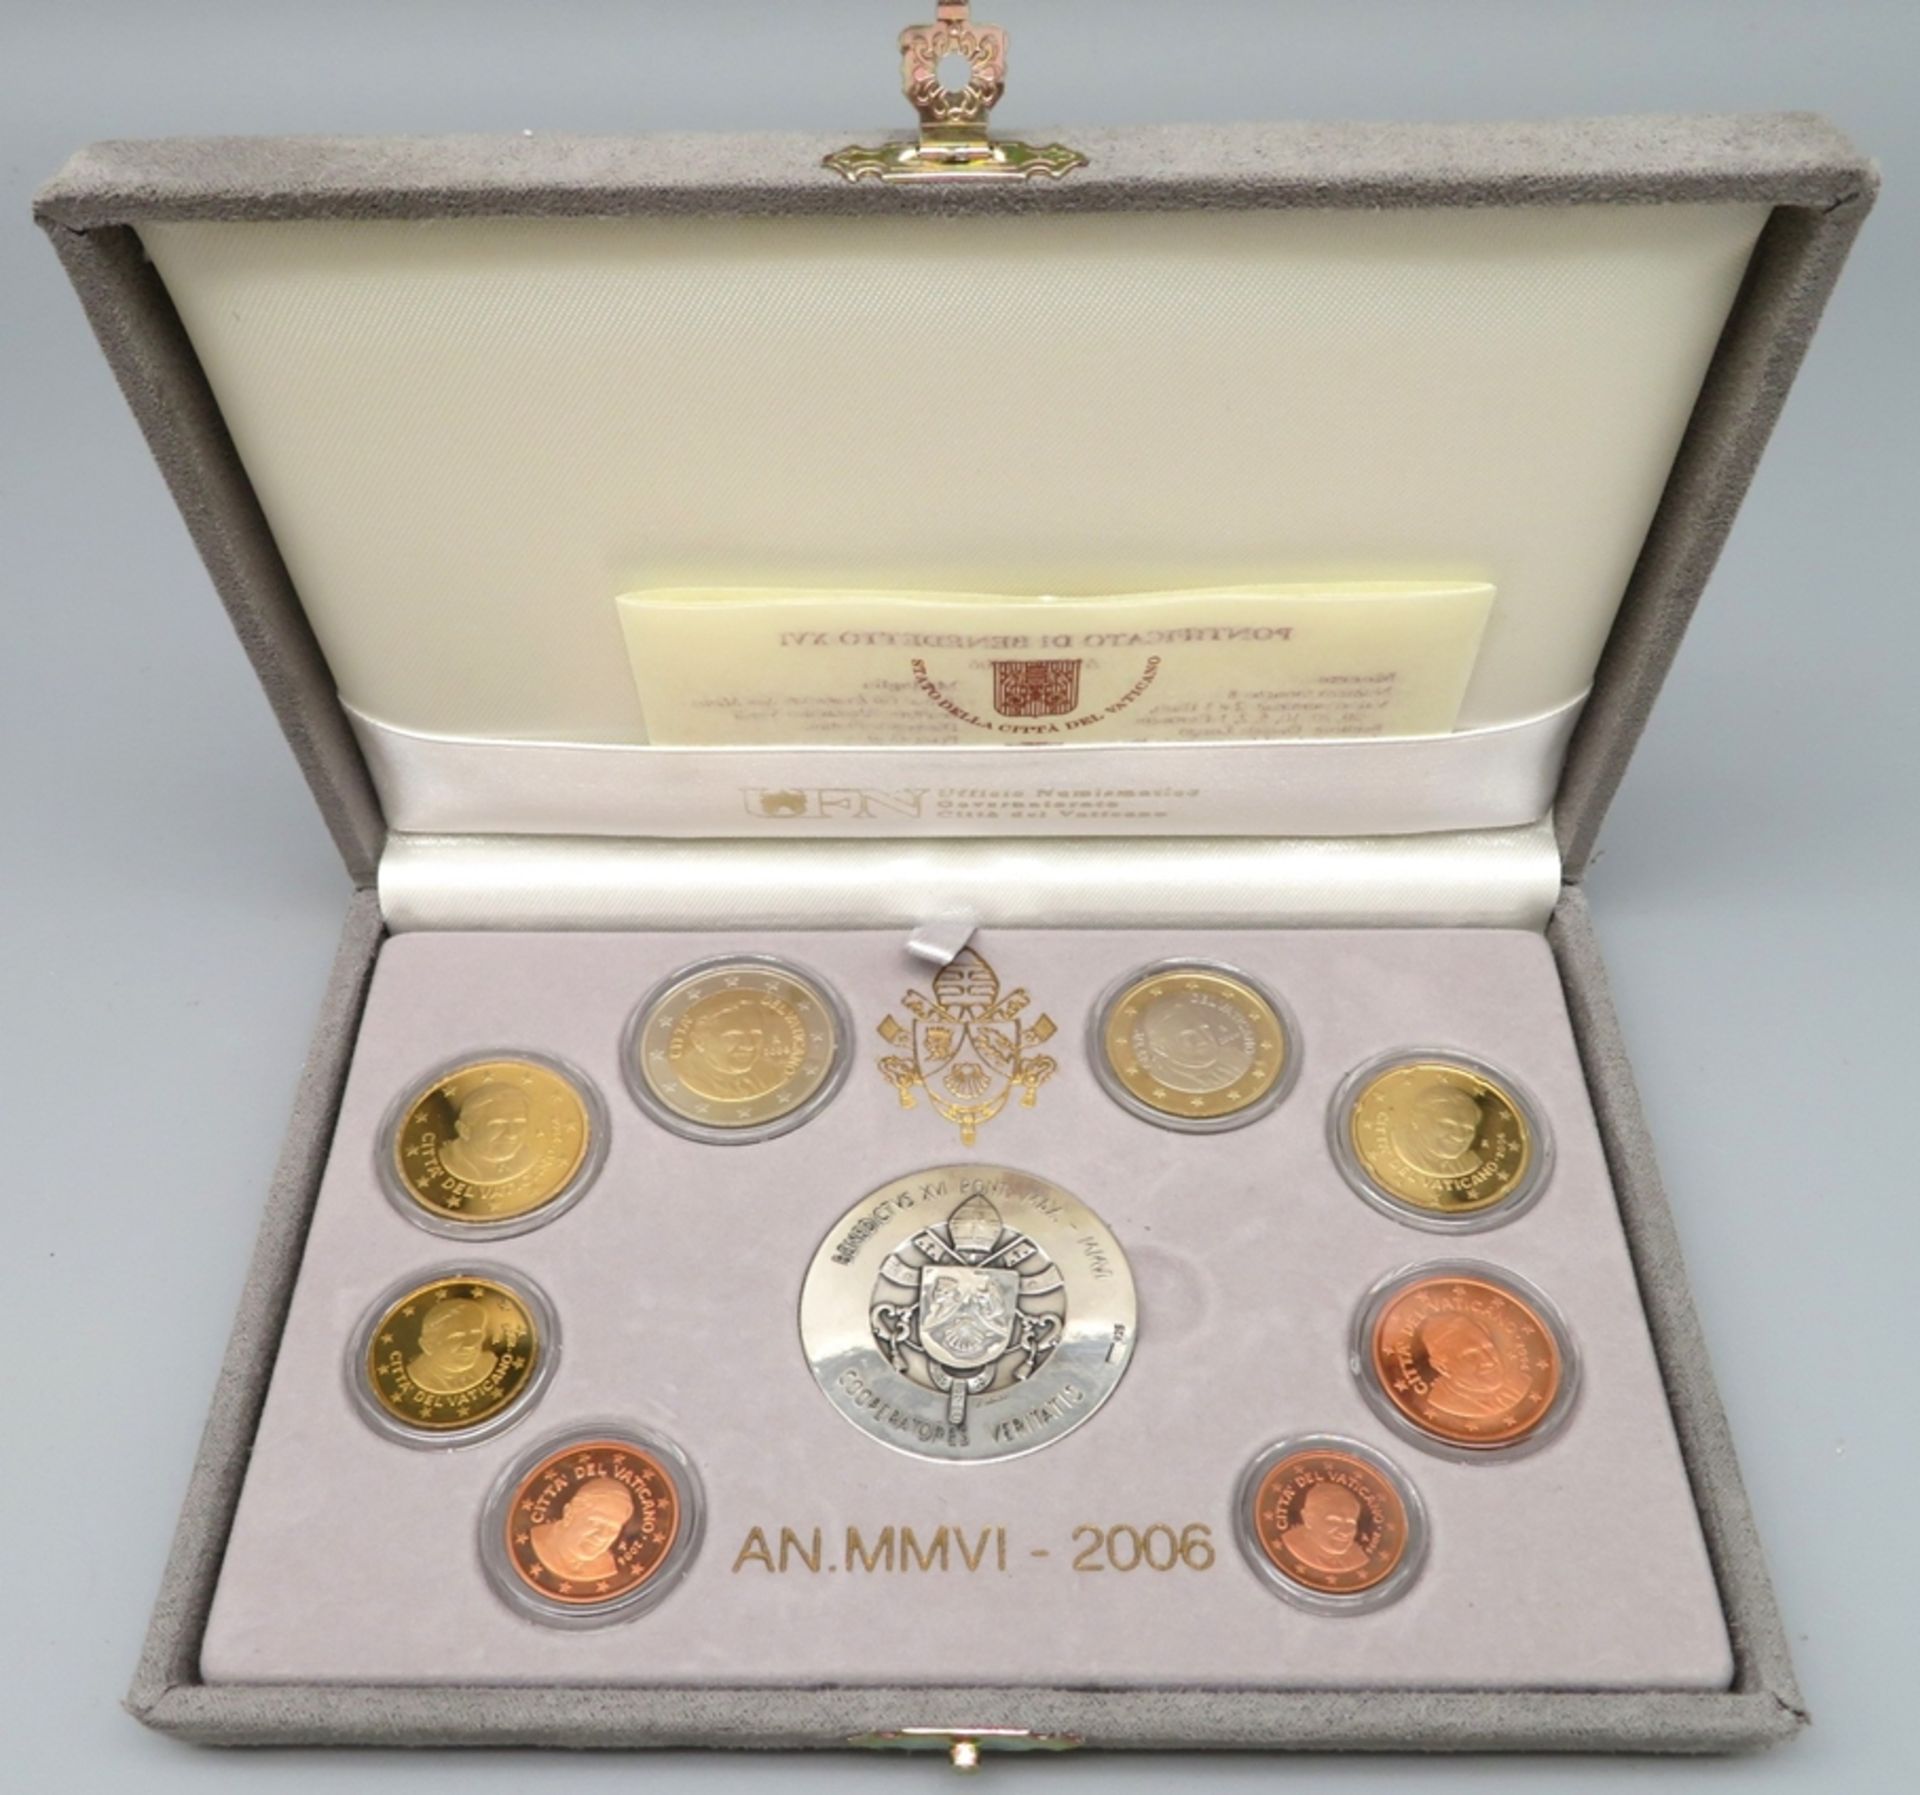 2 Euro-Münzsätze, Johannes Paul II./Benedikt XVI., 2003/2006, mit je 2 Medaillen, diese Silber 925/ - Image 2 of 2